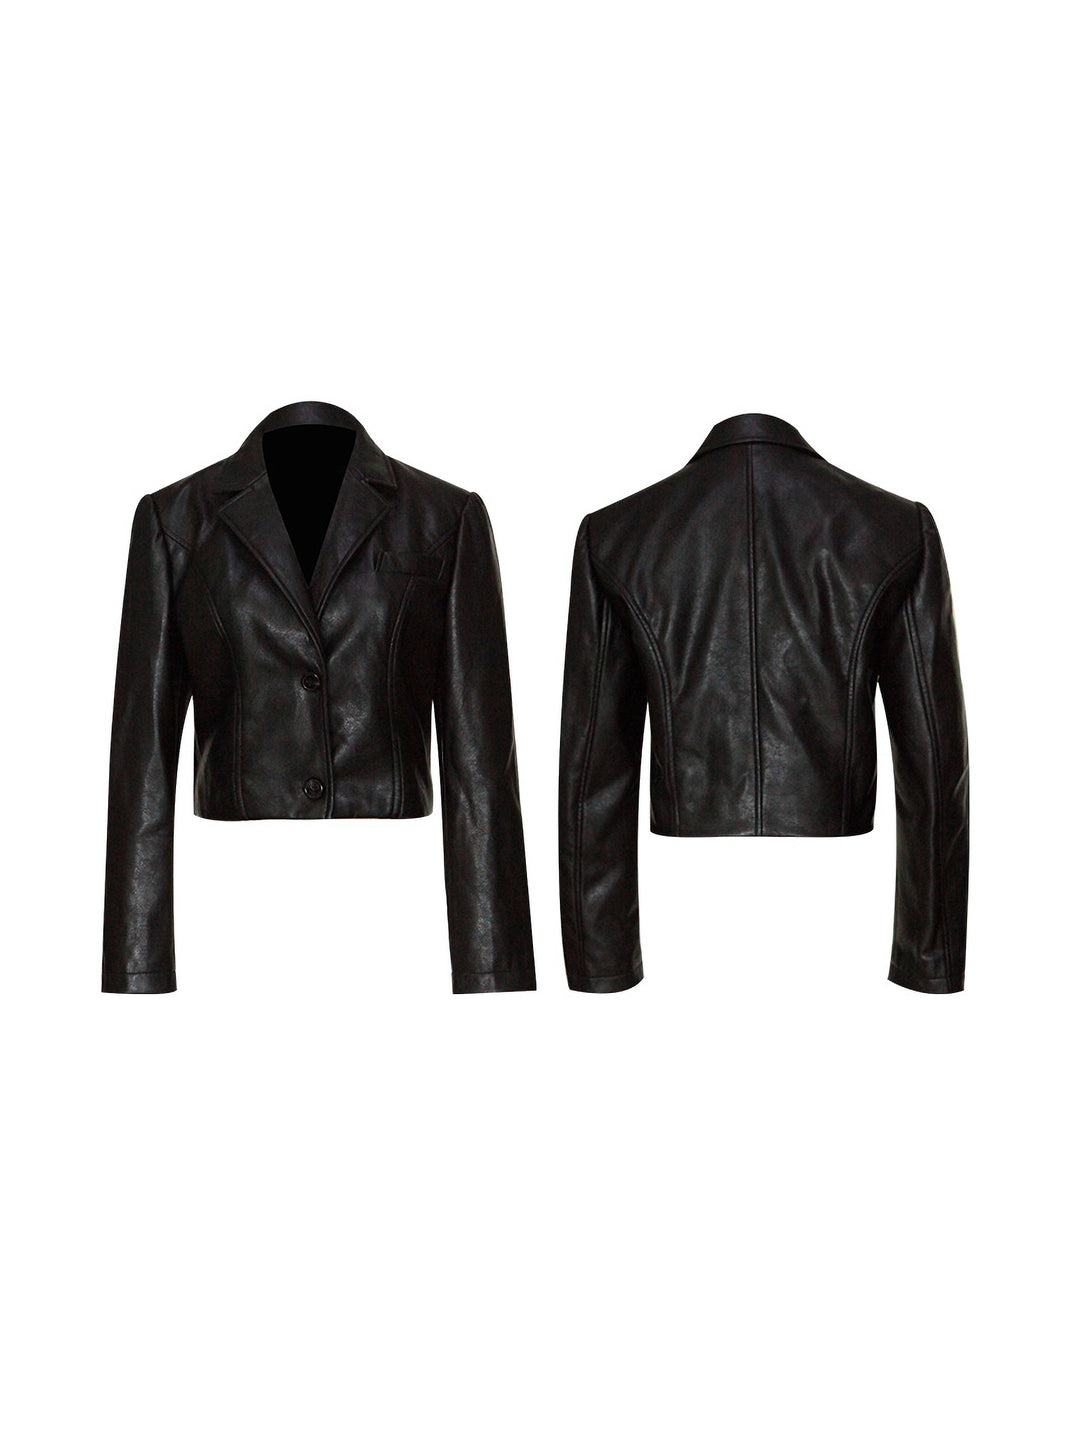 Leather rider style short jacket 